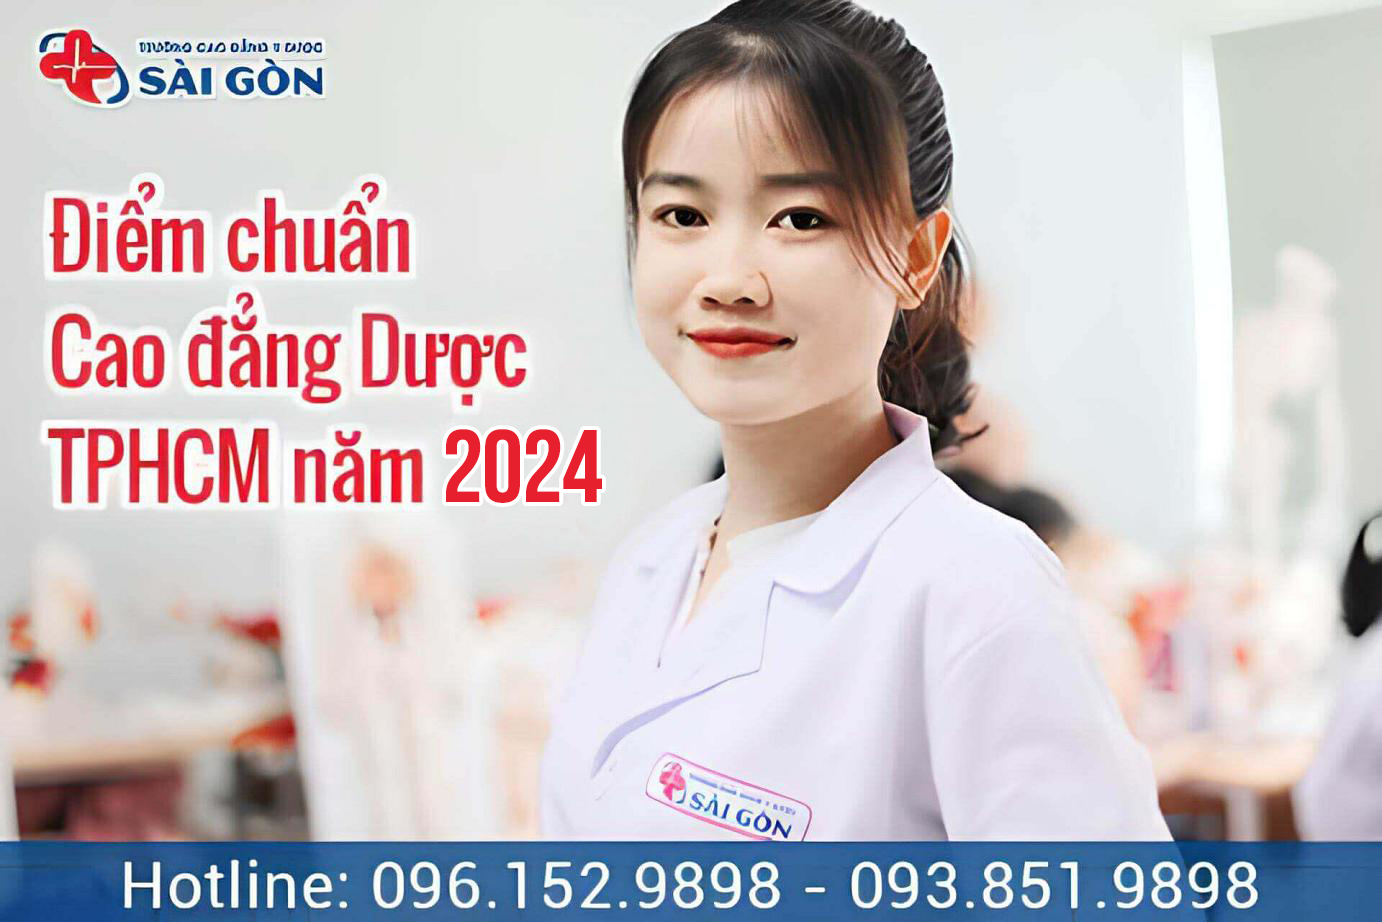 Điểm chuẩn Cao Đẳng Y Dược Sài Gòn hệ chính quy năm 2024